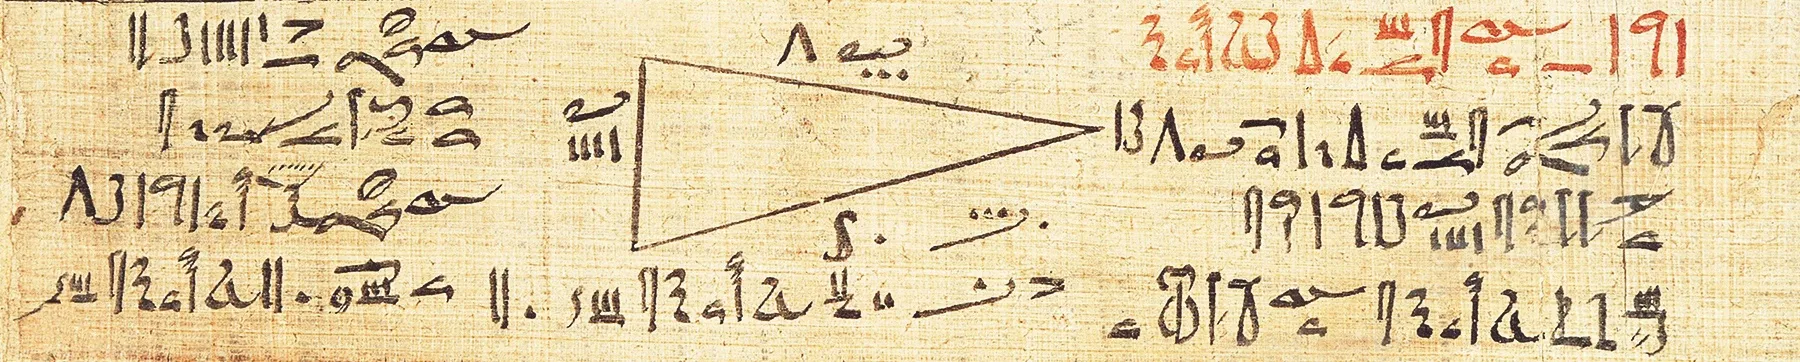 Problème de géométrie extrait du papyrus Rhind (2000 av. J.-C.), British Museum.